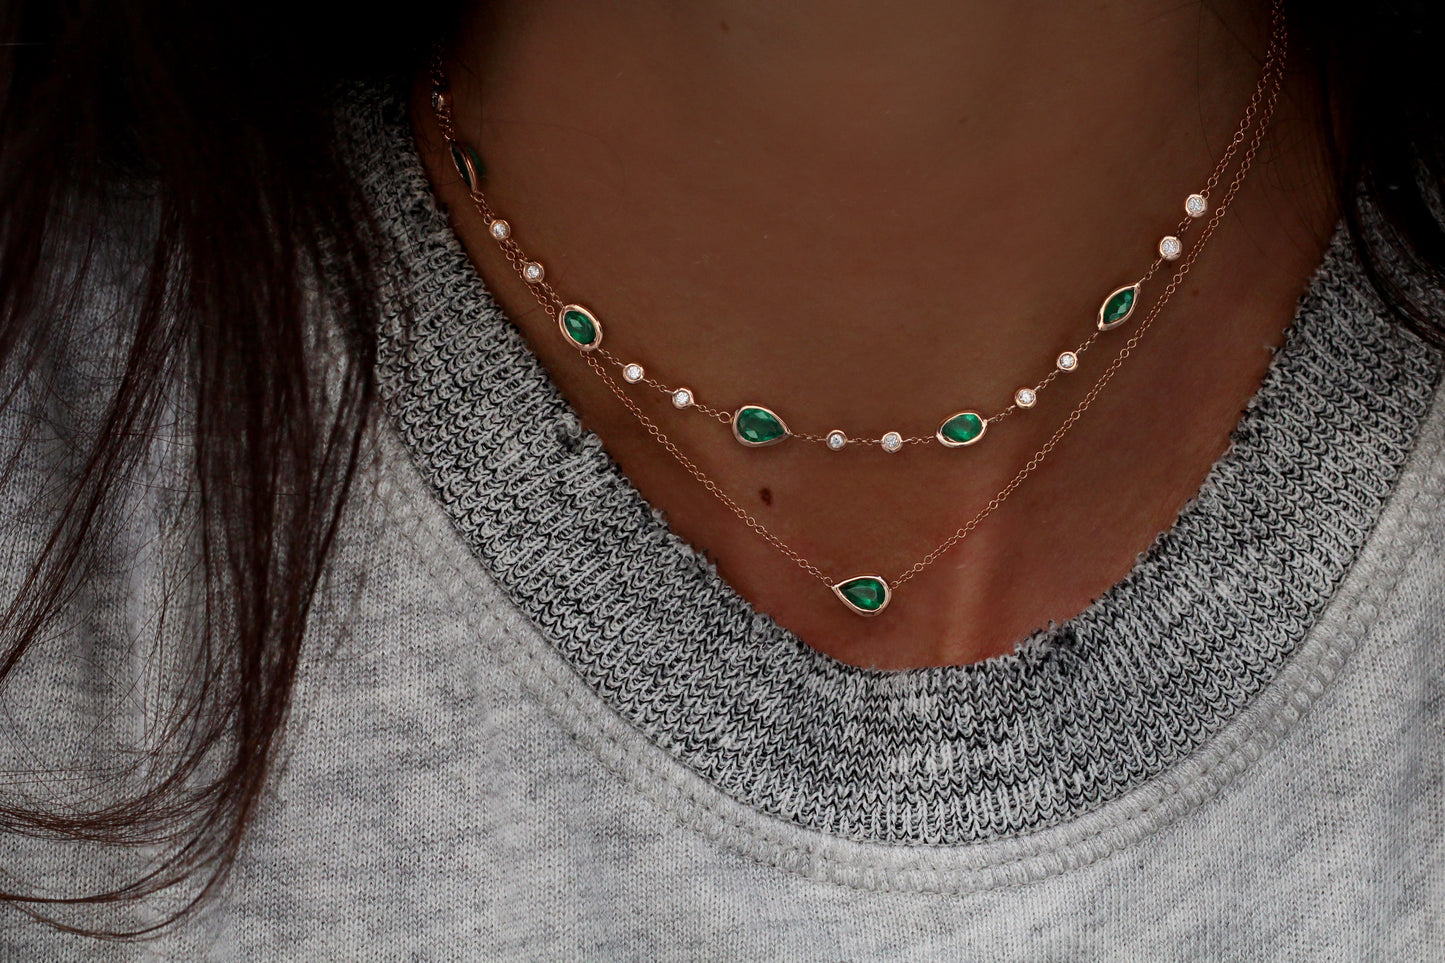 14kt gold and diamond emerald bezel choker - Luna Skye